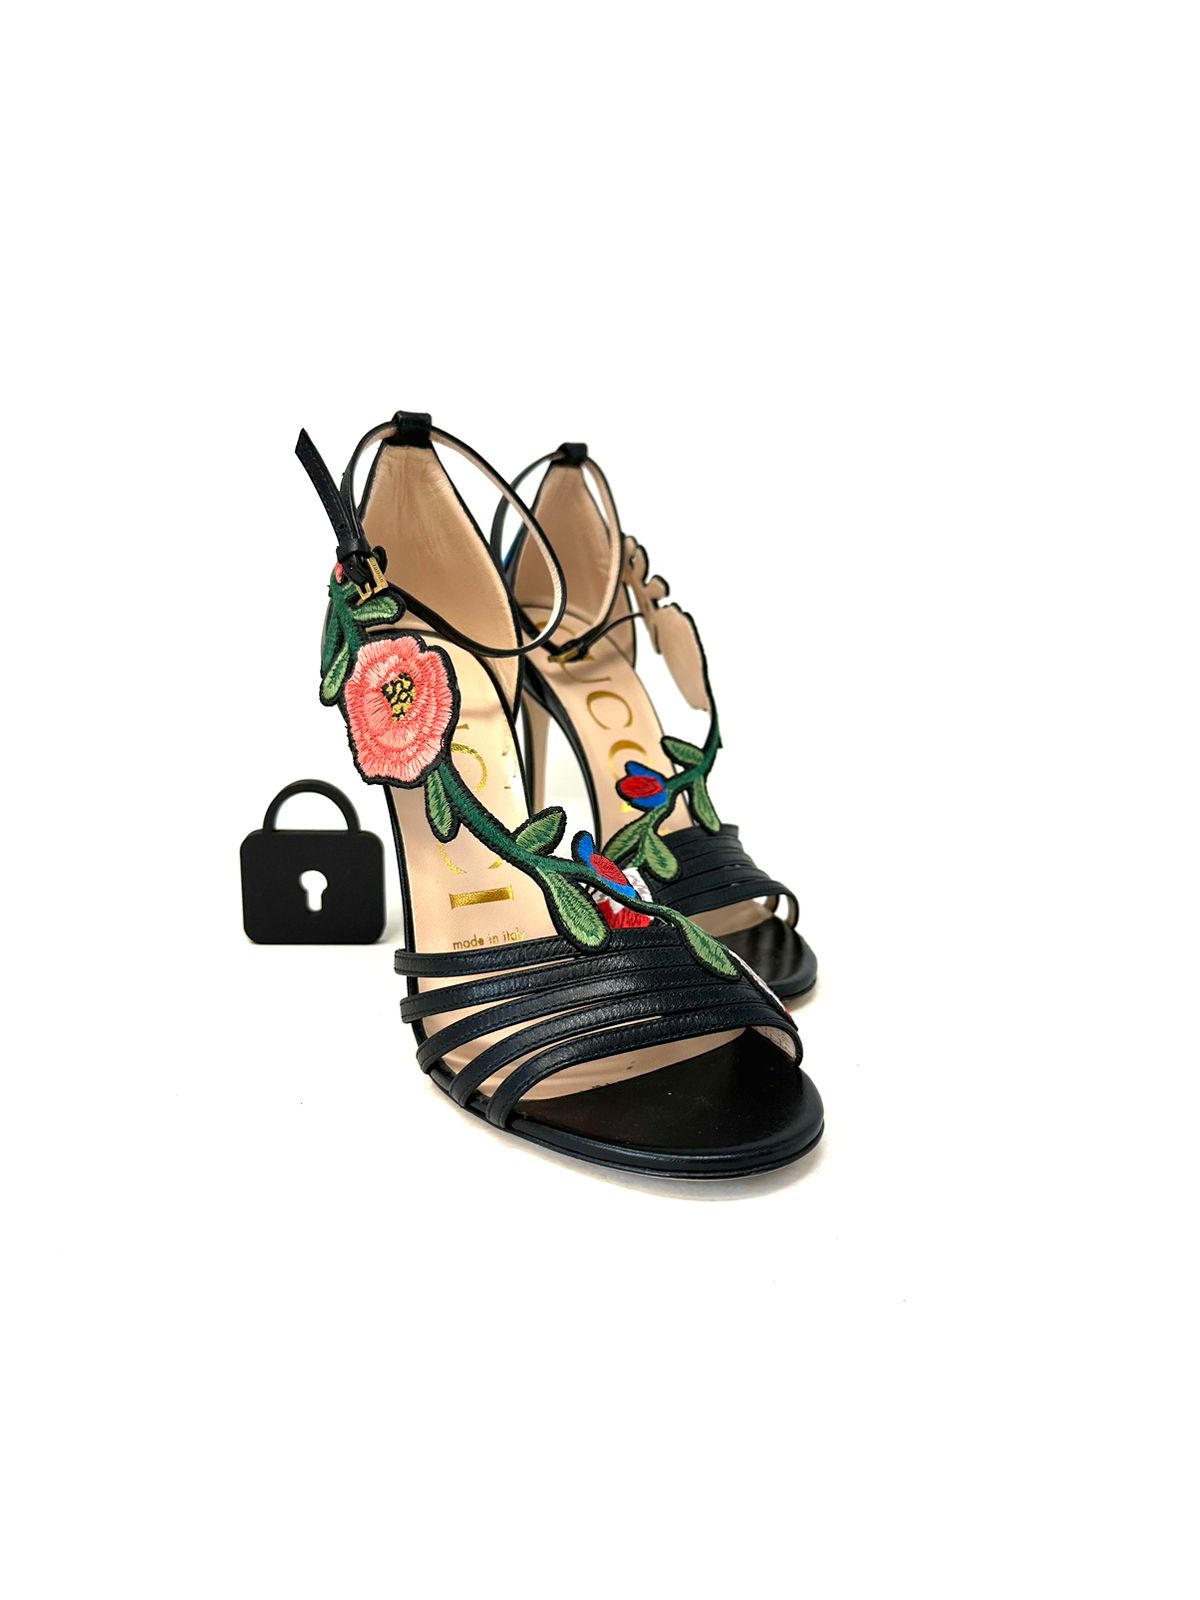 Flower Sandals T36.5 Eu